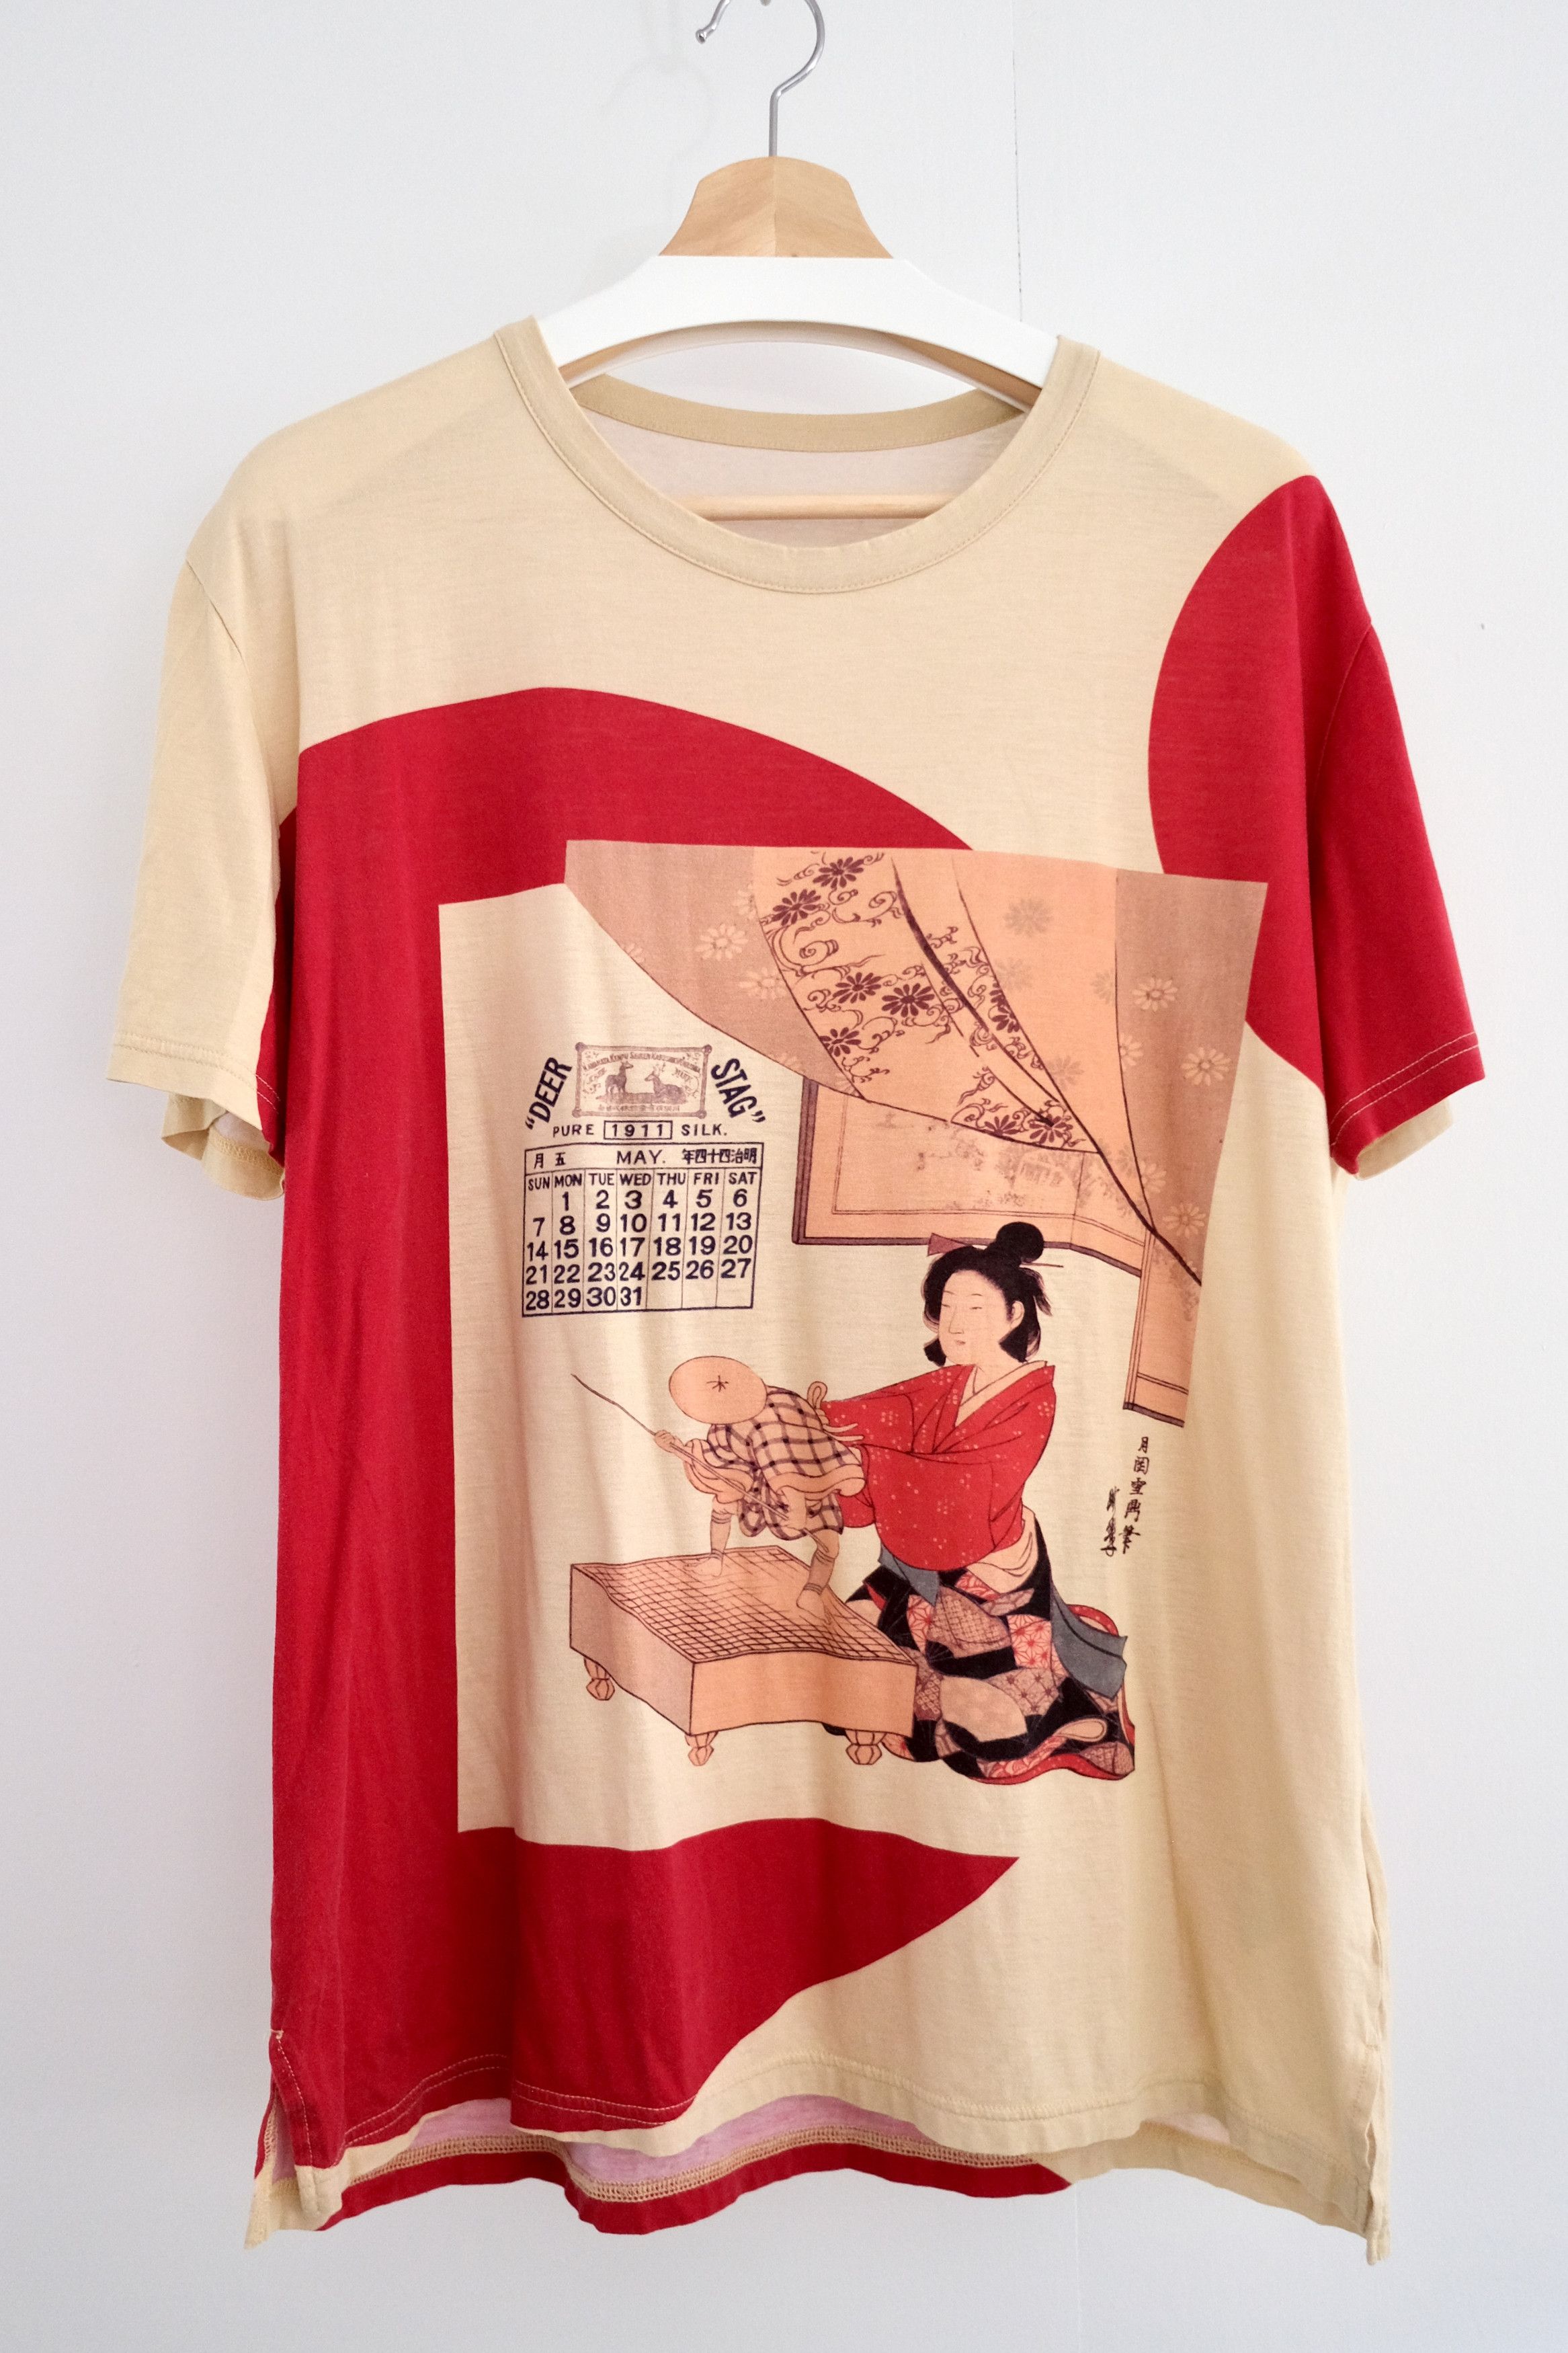 🎐 2020 Kawanabe Ukiyo-e Shirt - 1